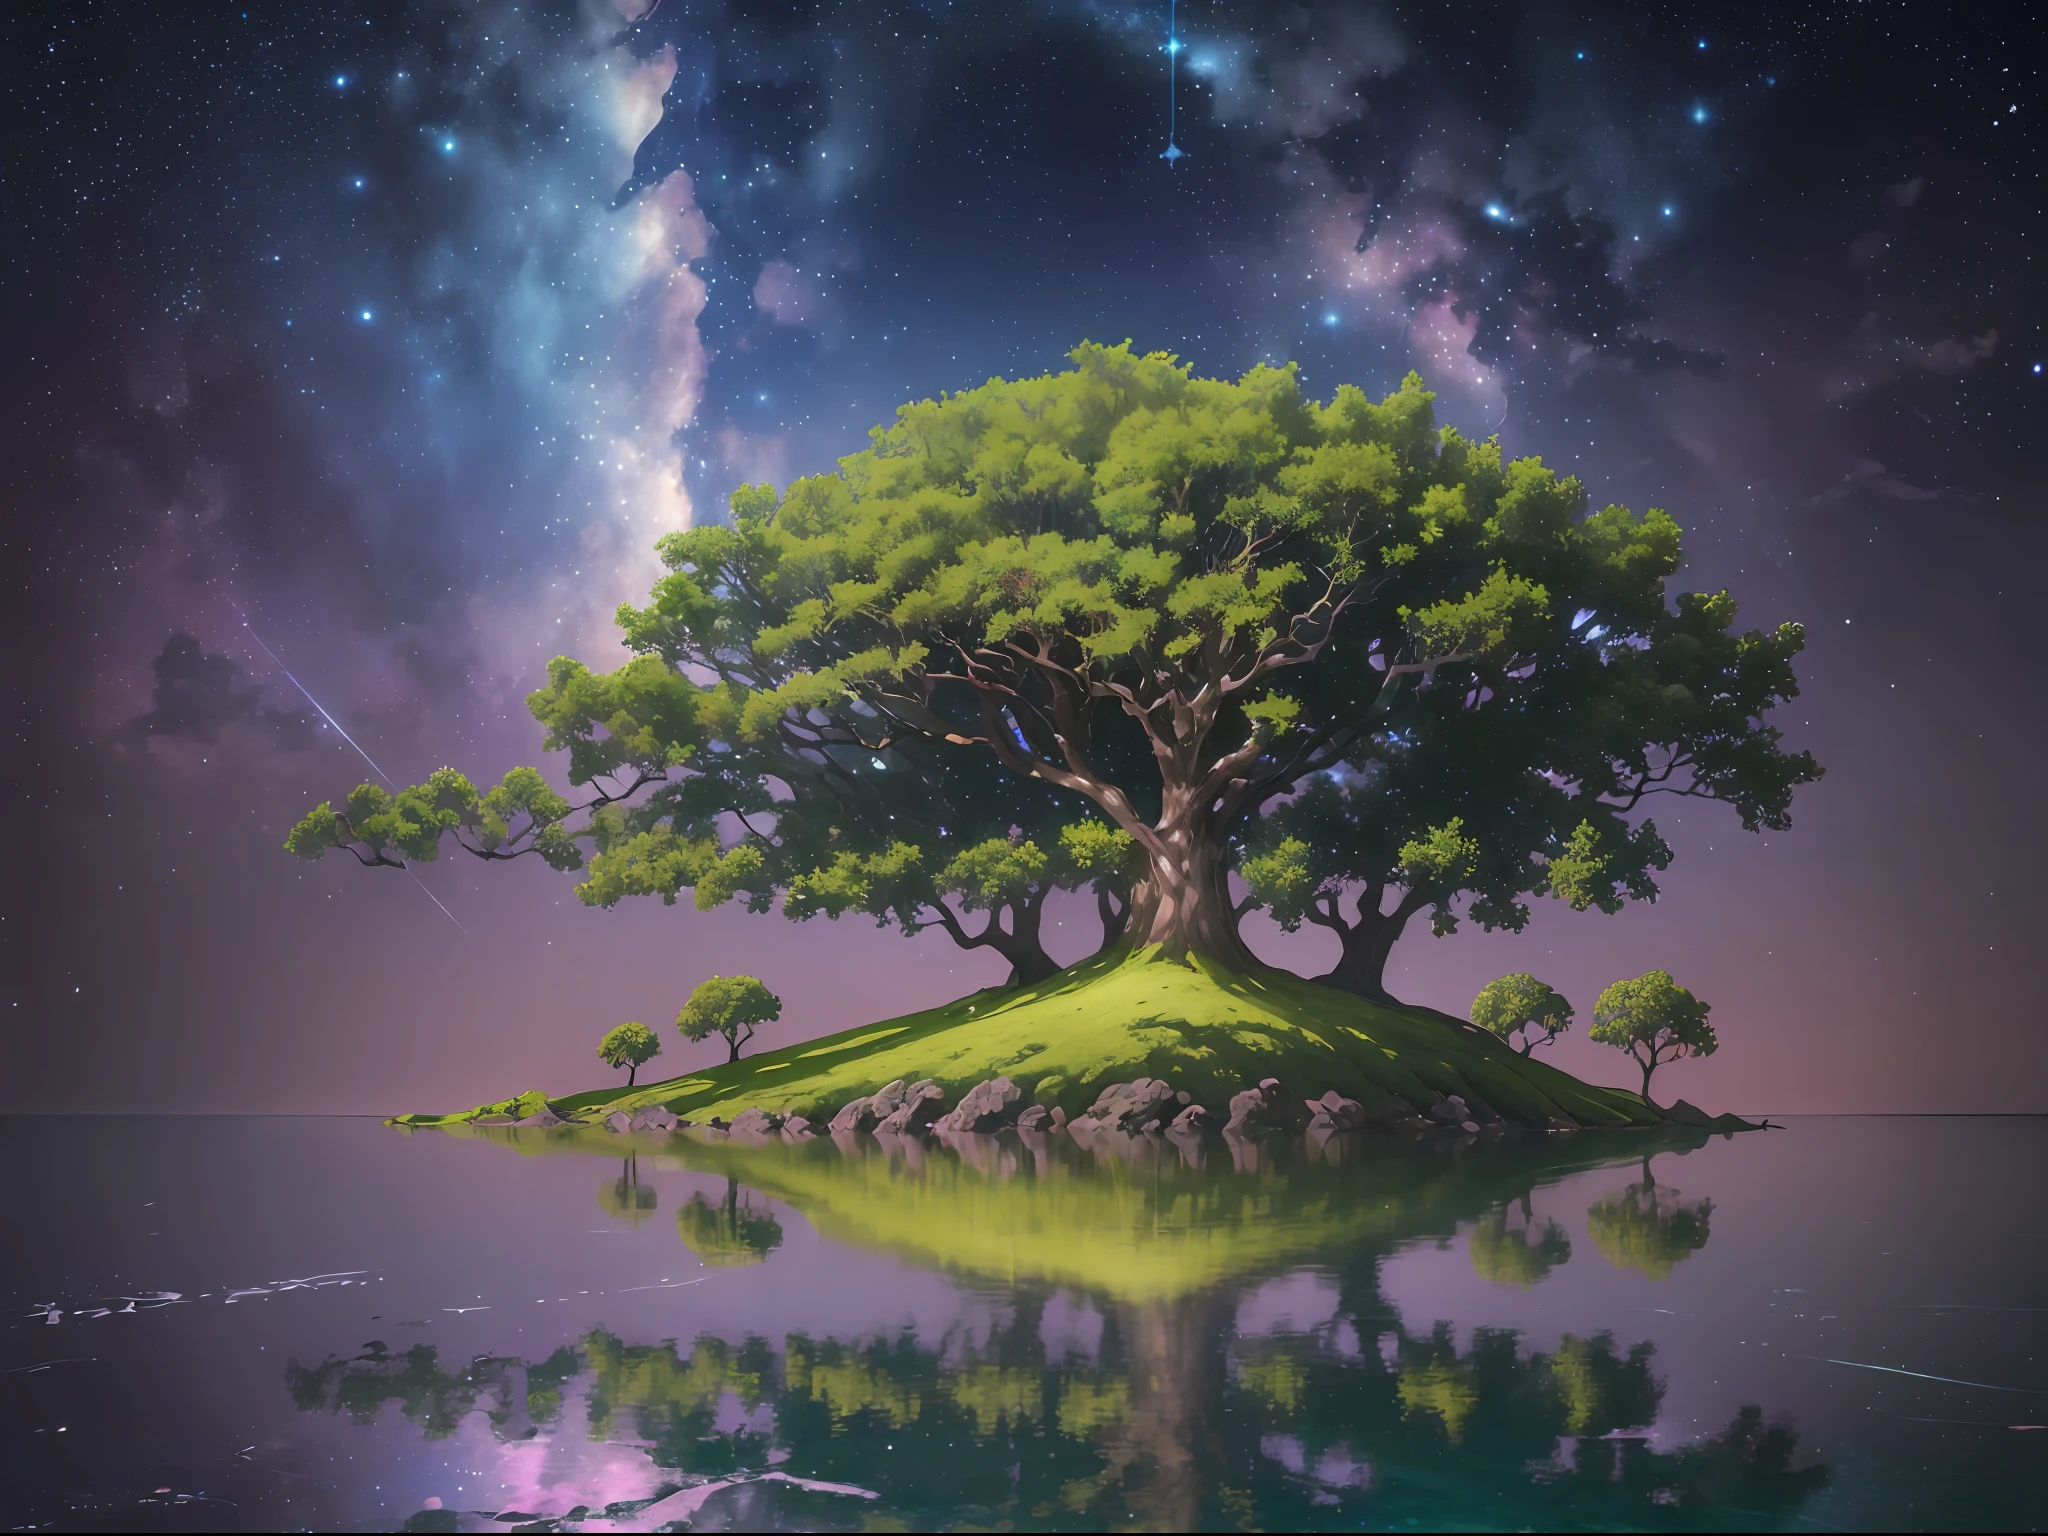 (一棵枝繁葉茂的大樹:1.2, 夜晚, 星星, 幻想), 漂浮的魔法島, 水無波, 長的, 突出的樹枝倒映在水面上,  夜空中的星星在水中的亮度 ( 1.2 由 Emb-Lua 提供 ), 圖像背景中可見的星座效應.